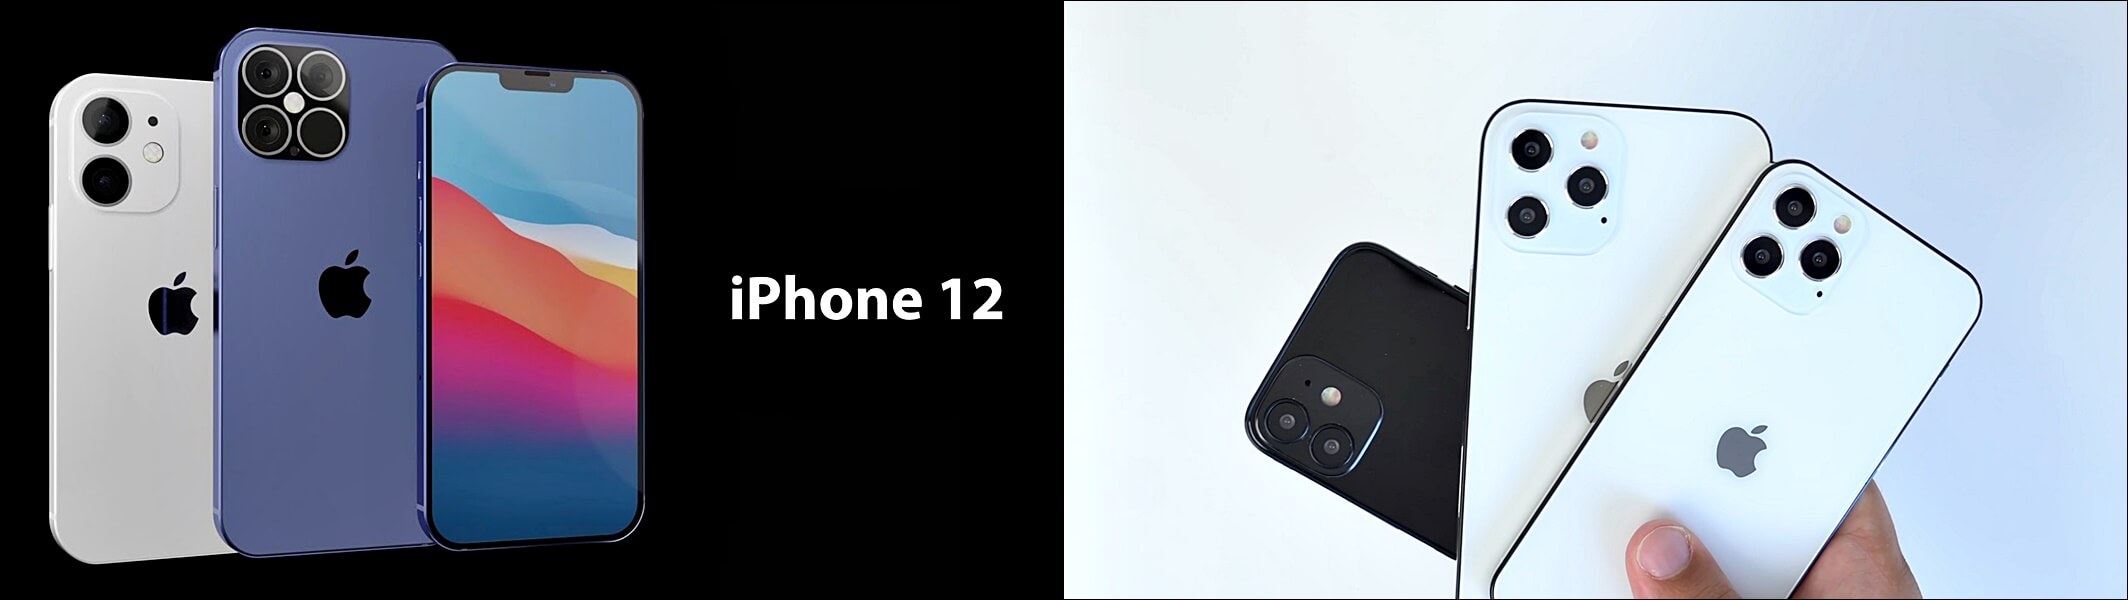 아이폰 12 출시일 : 9월 8일 공개, 10월 출시 전망